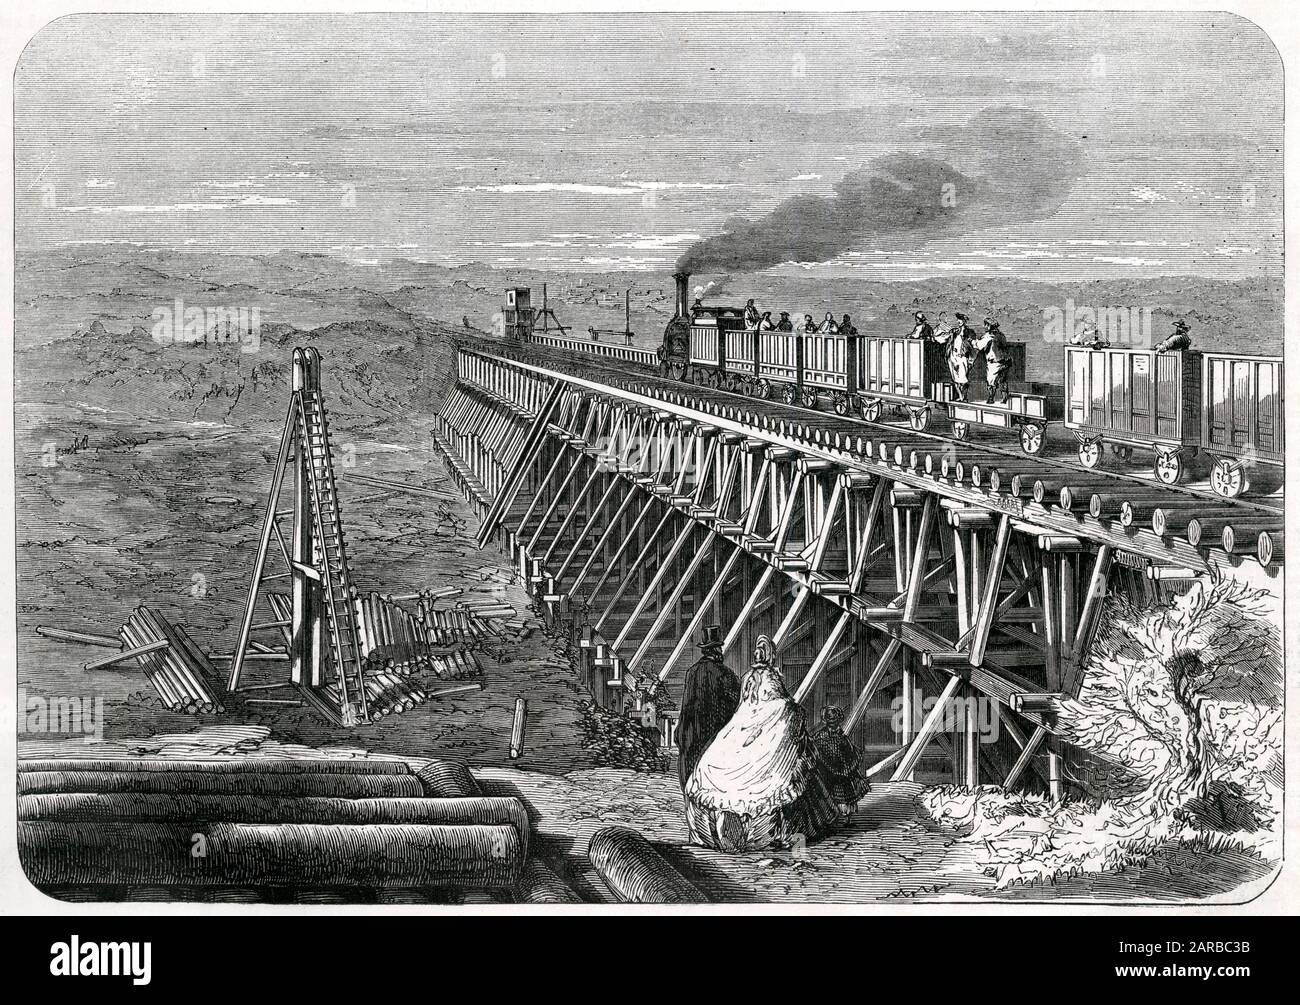 FERROCARRIL de Odessa-BALTA el enlace ferroviario se abre entre estas dos ciudades, a una distancia de 180 km. El primer tren se desmonta a través de un puente de madera Fecha: 1866 Foto de stock